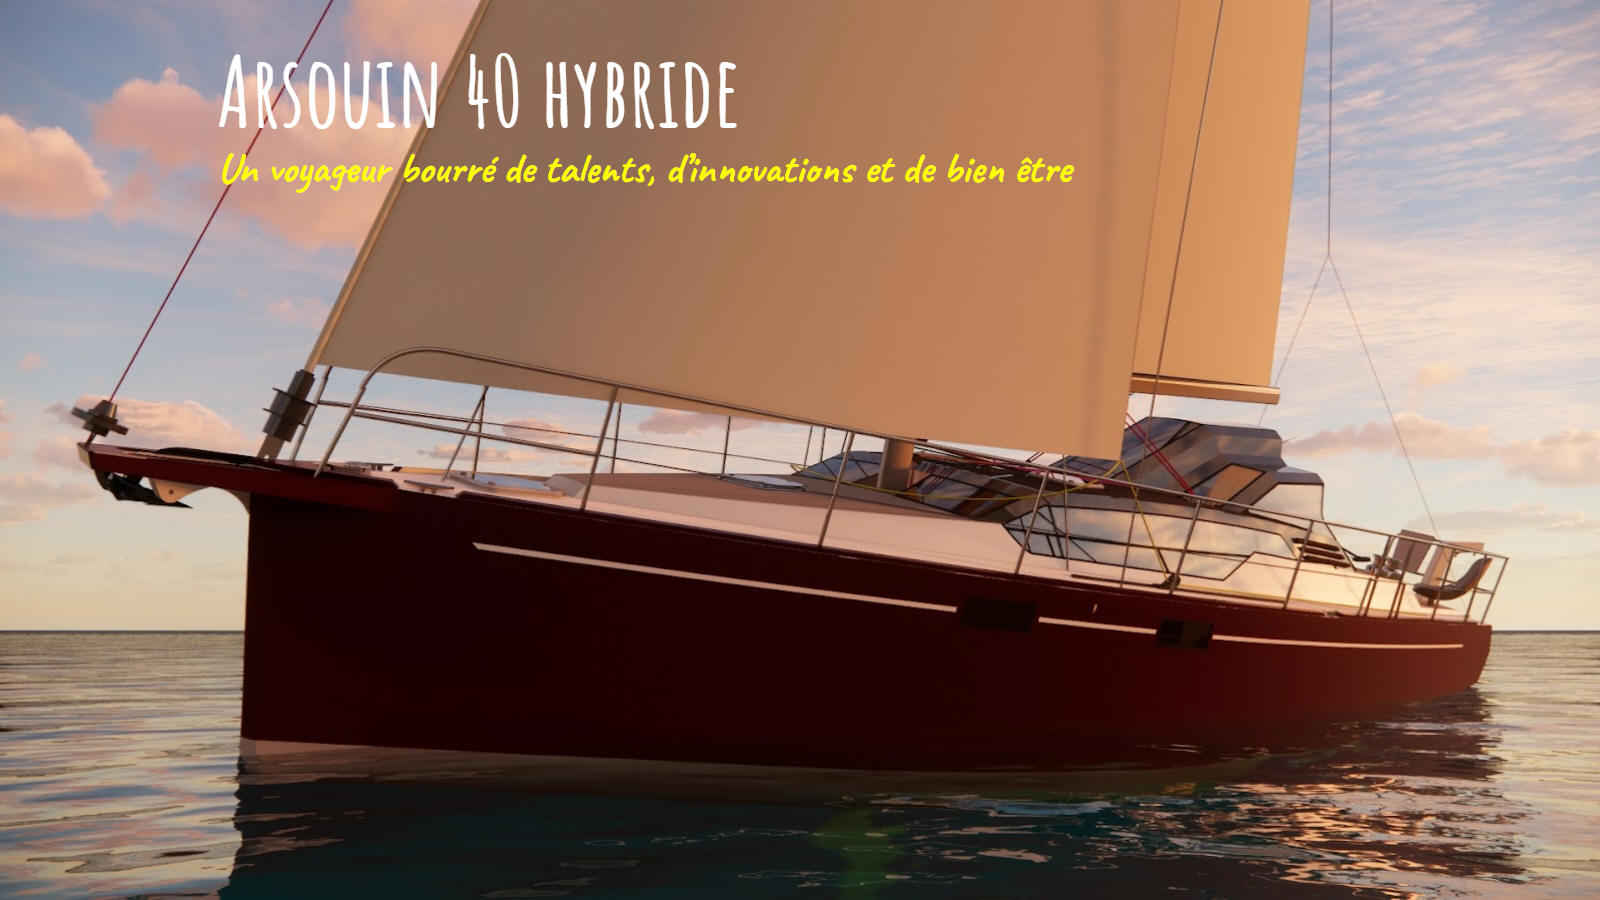 Arsouin 40 hybride, voilier de voyage. Respecter la mer avec l'électrique.